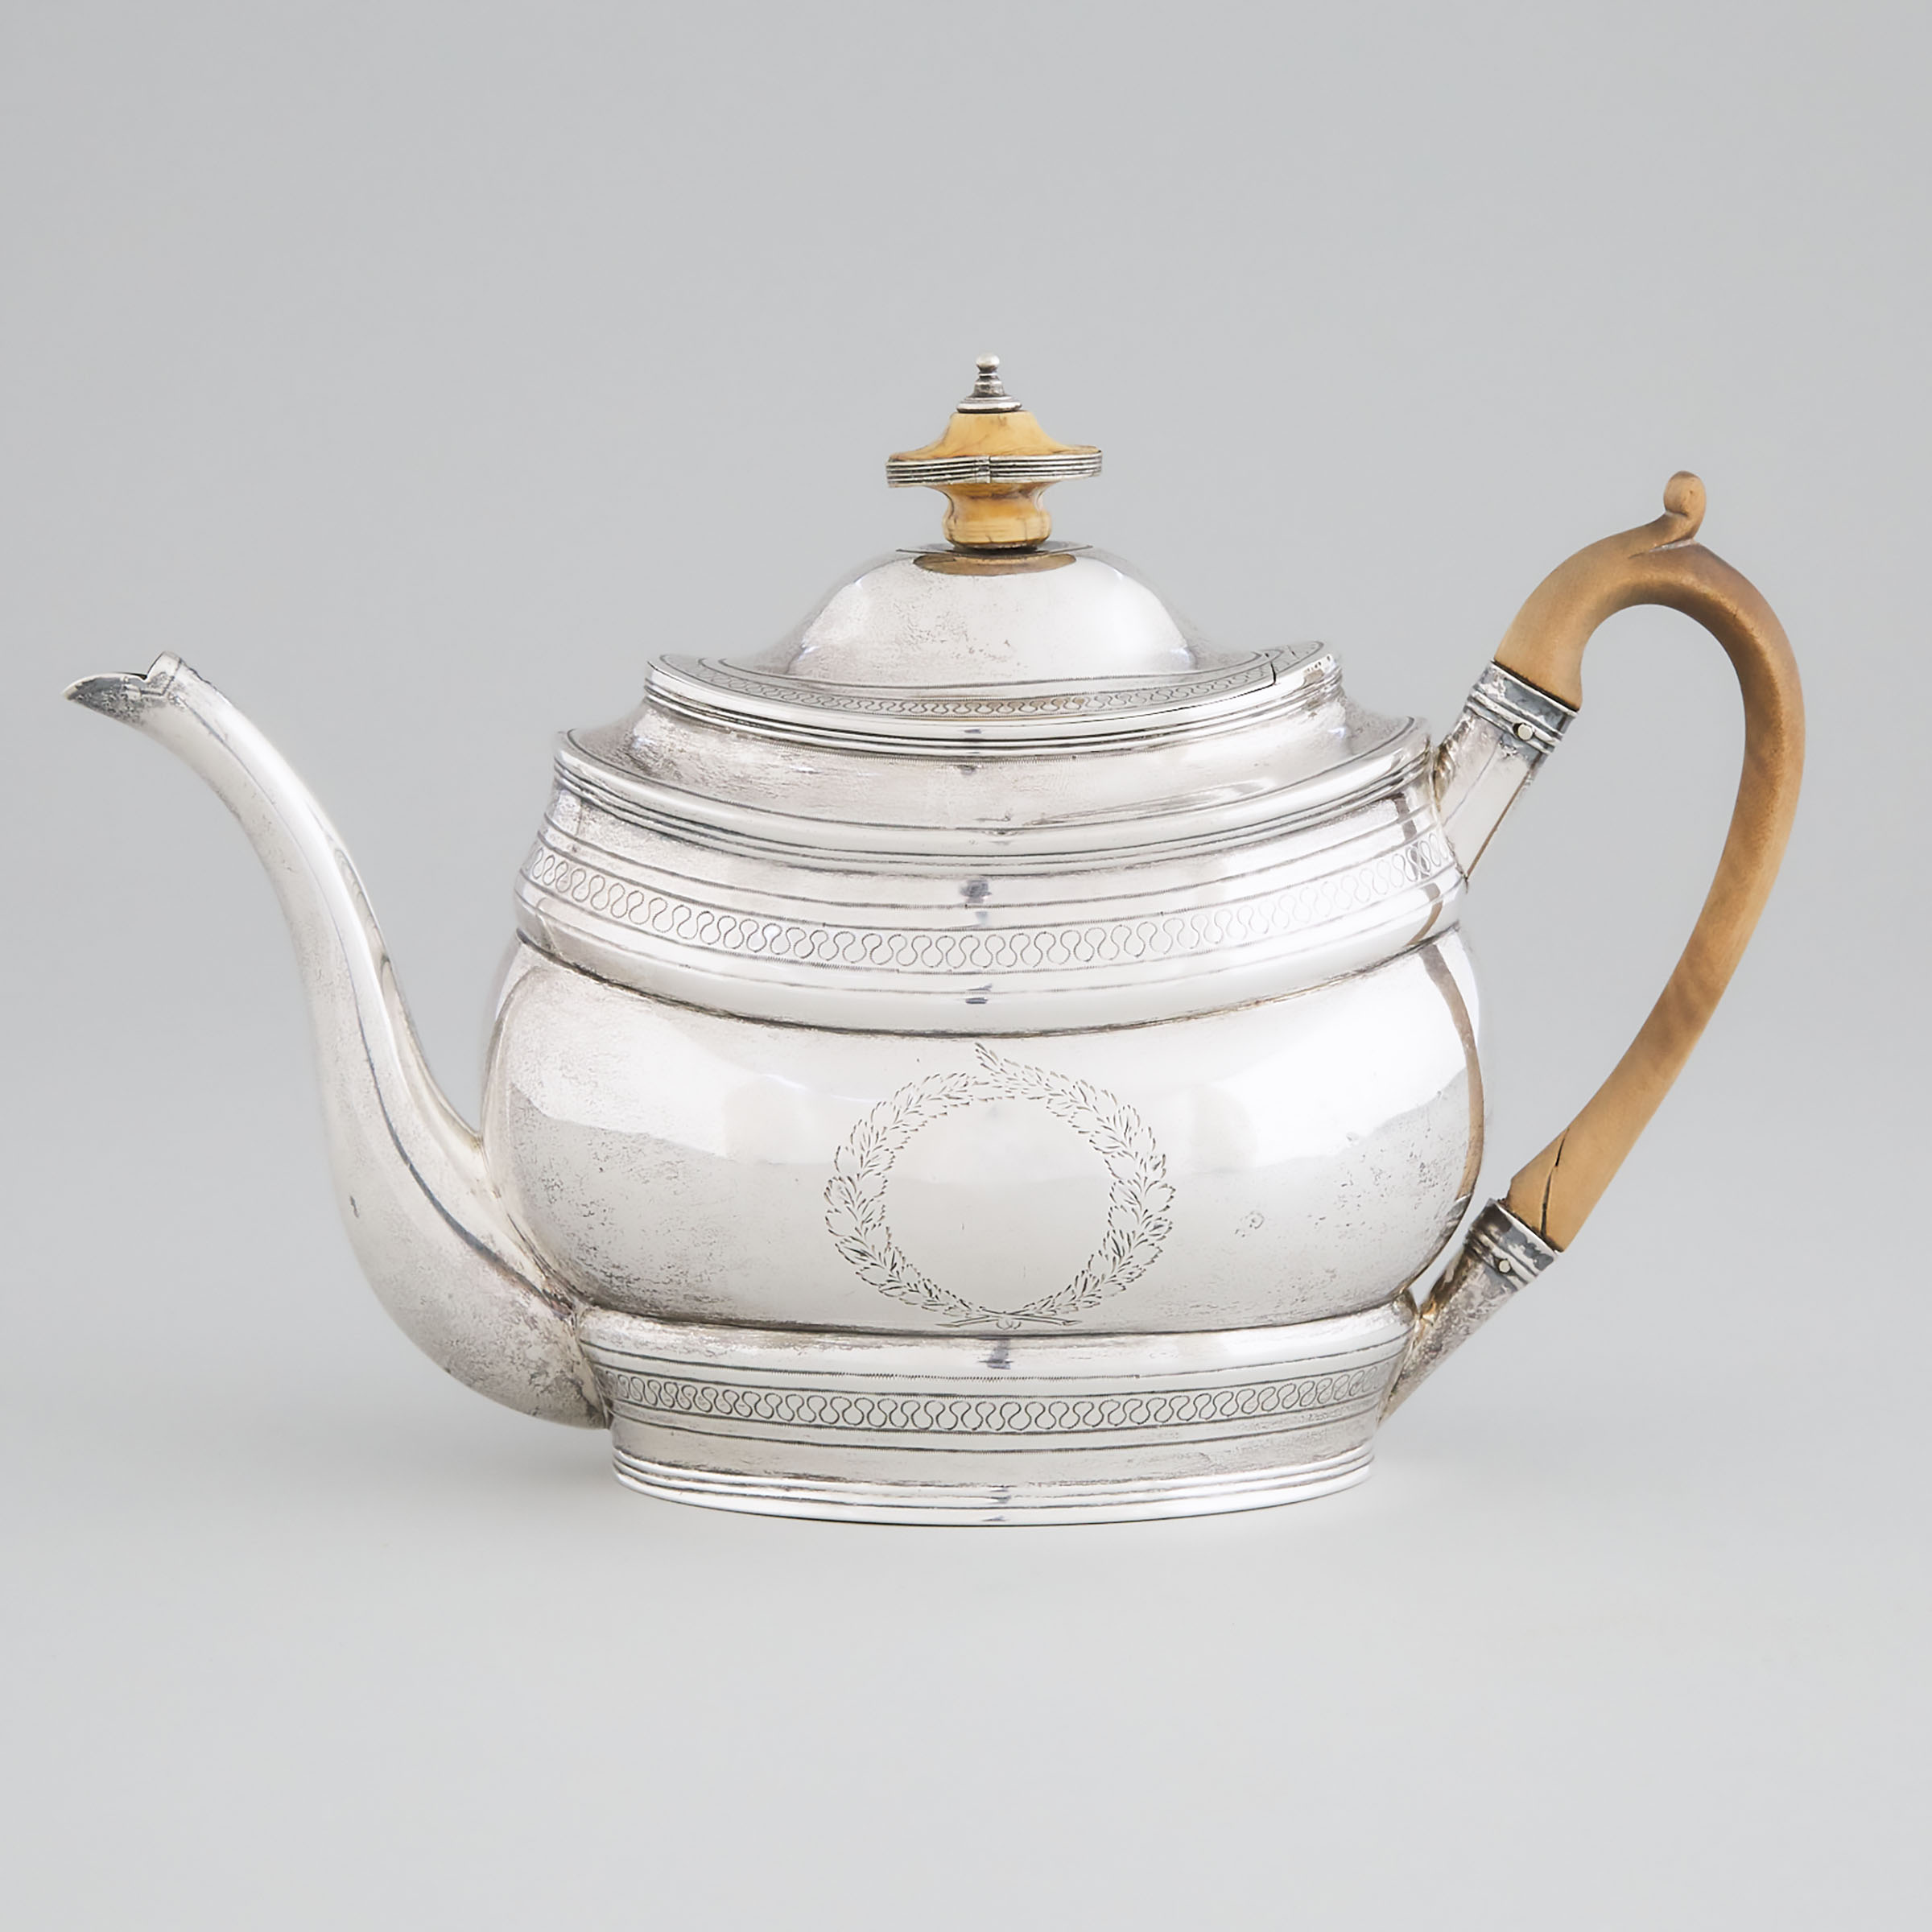 George III Silver Teapot, Robert